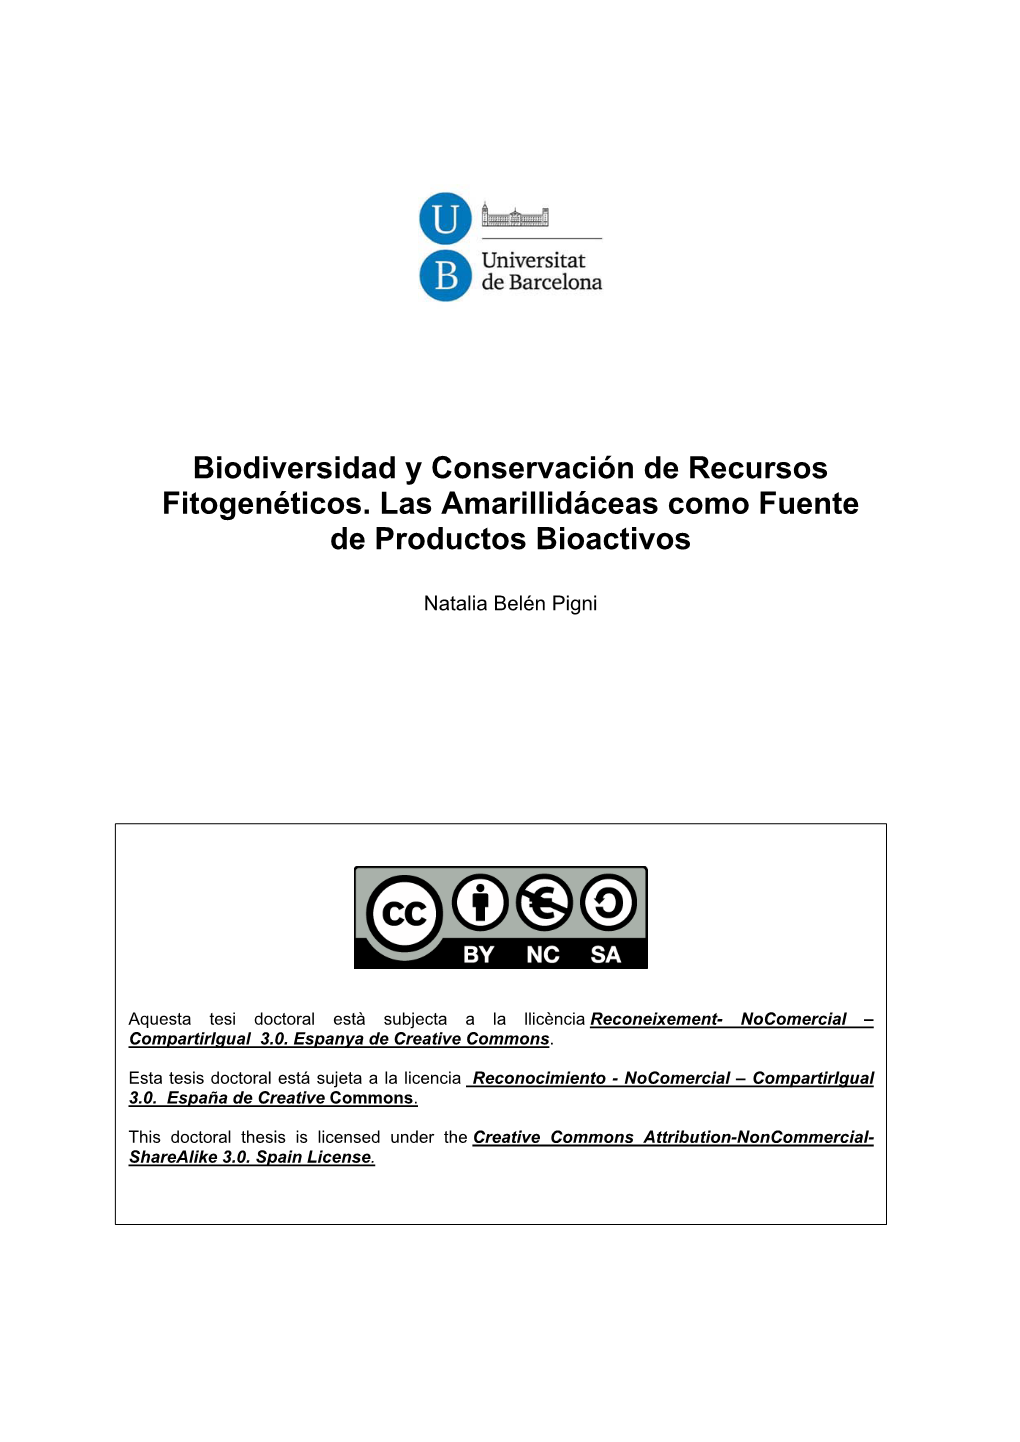 Biodiversidad Y Conservación De Recursos Fitogenéticos. Las Amarillidáceas Como Fuente De Productos Bioactivos